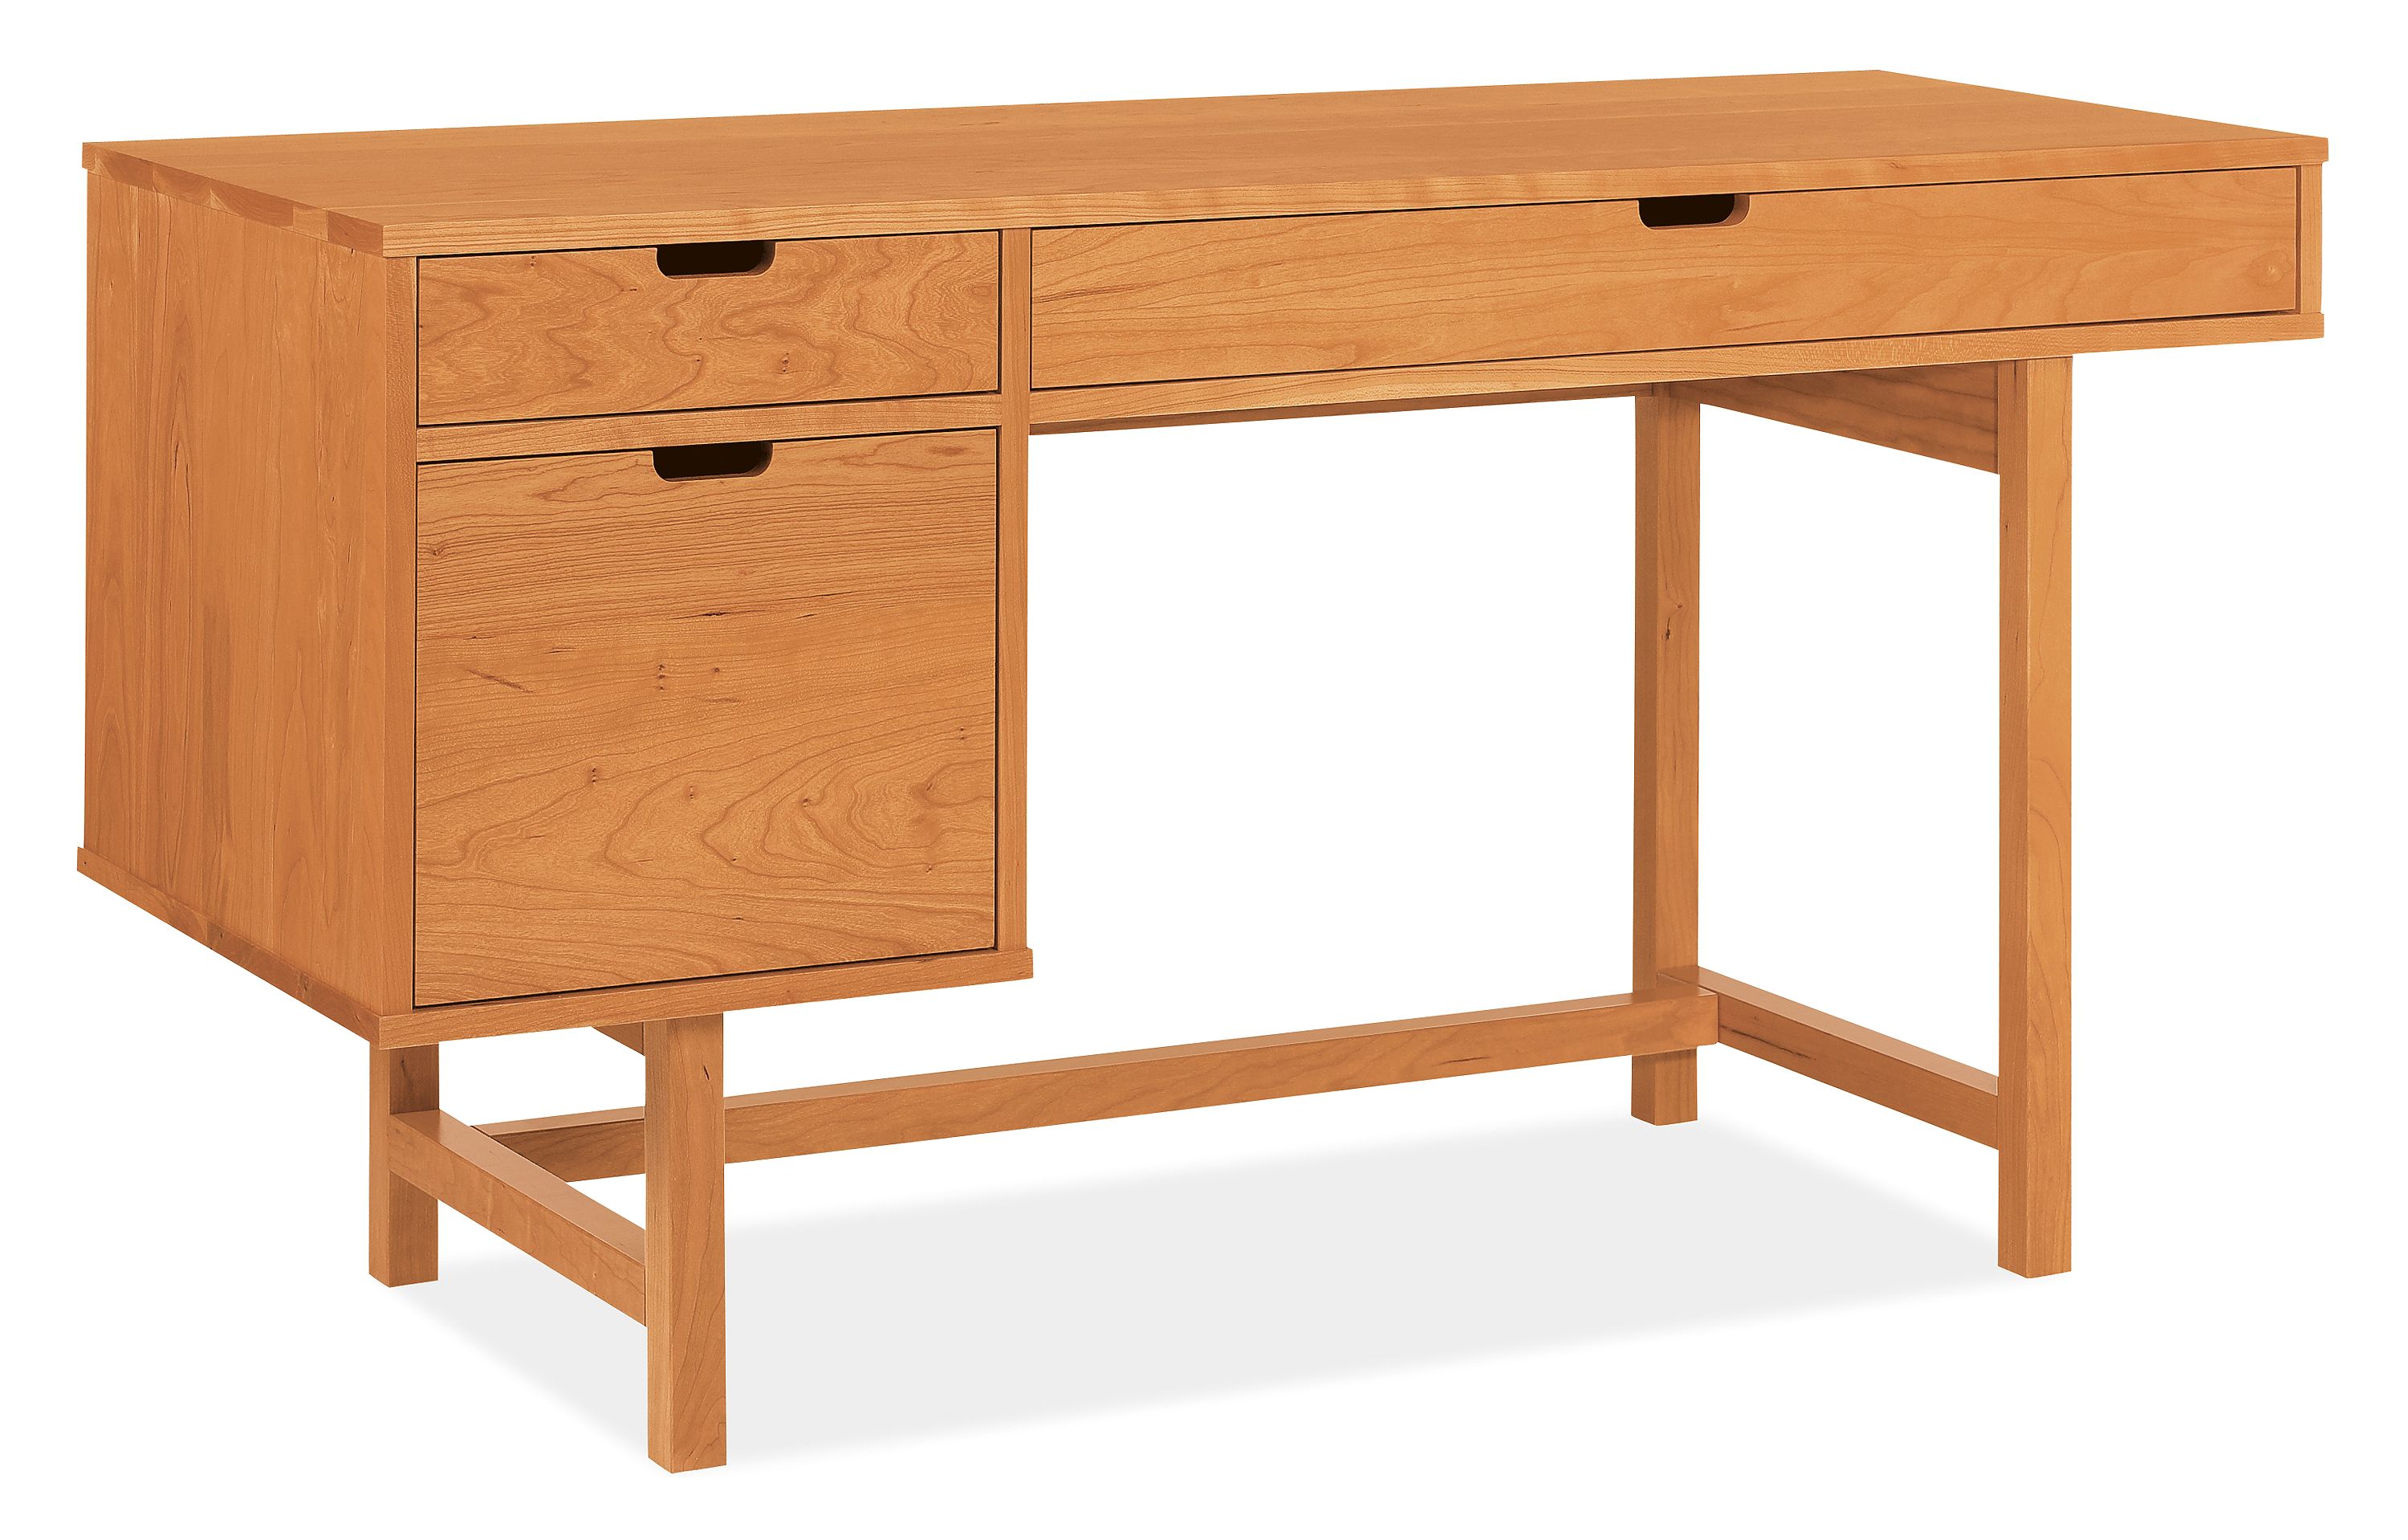 Ellis Modern Desks With File Drawers Modern Desks Tables